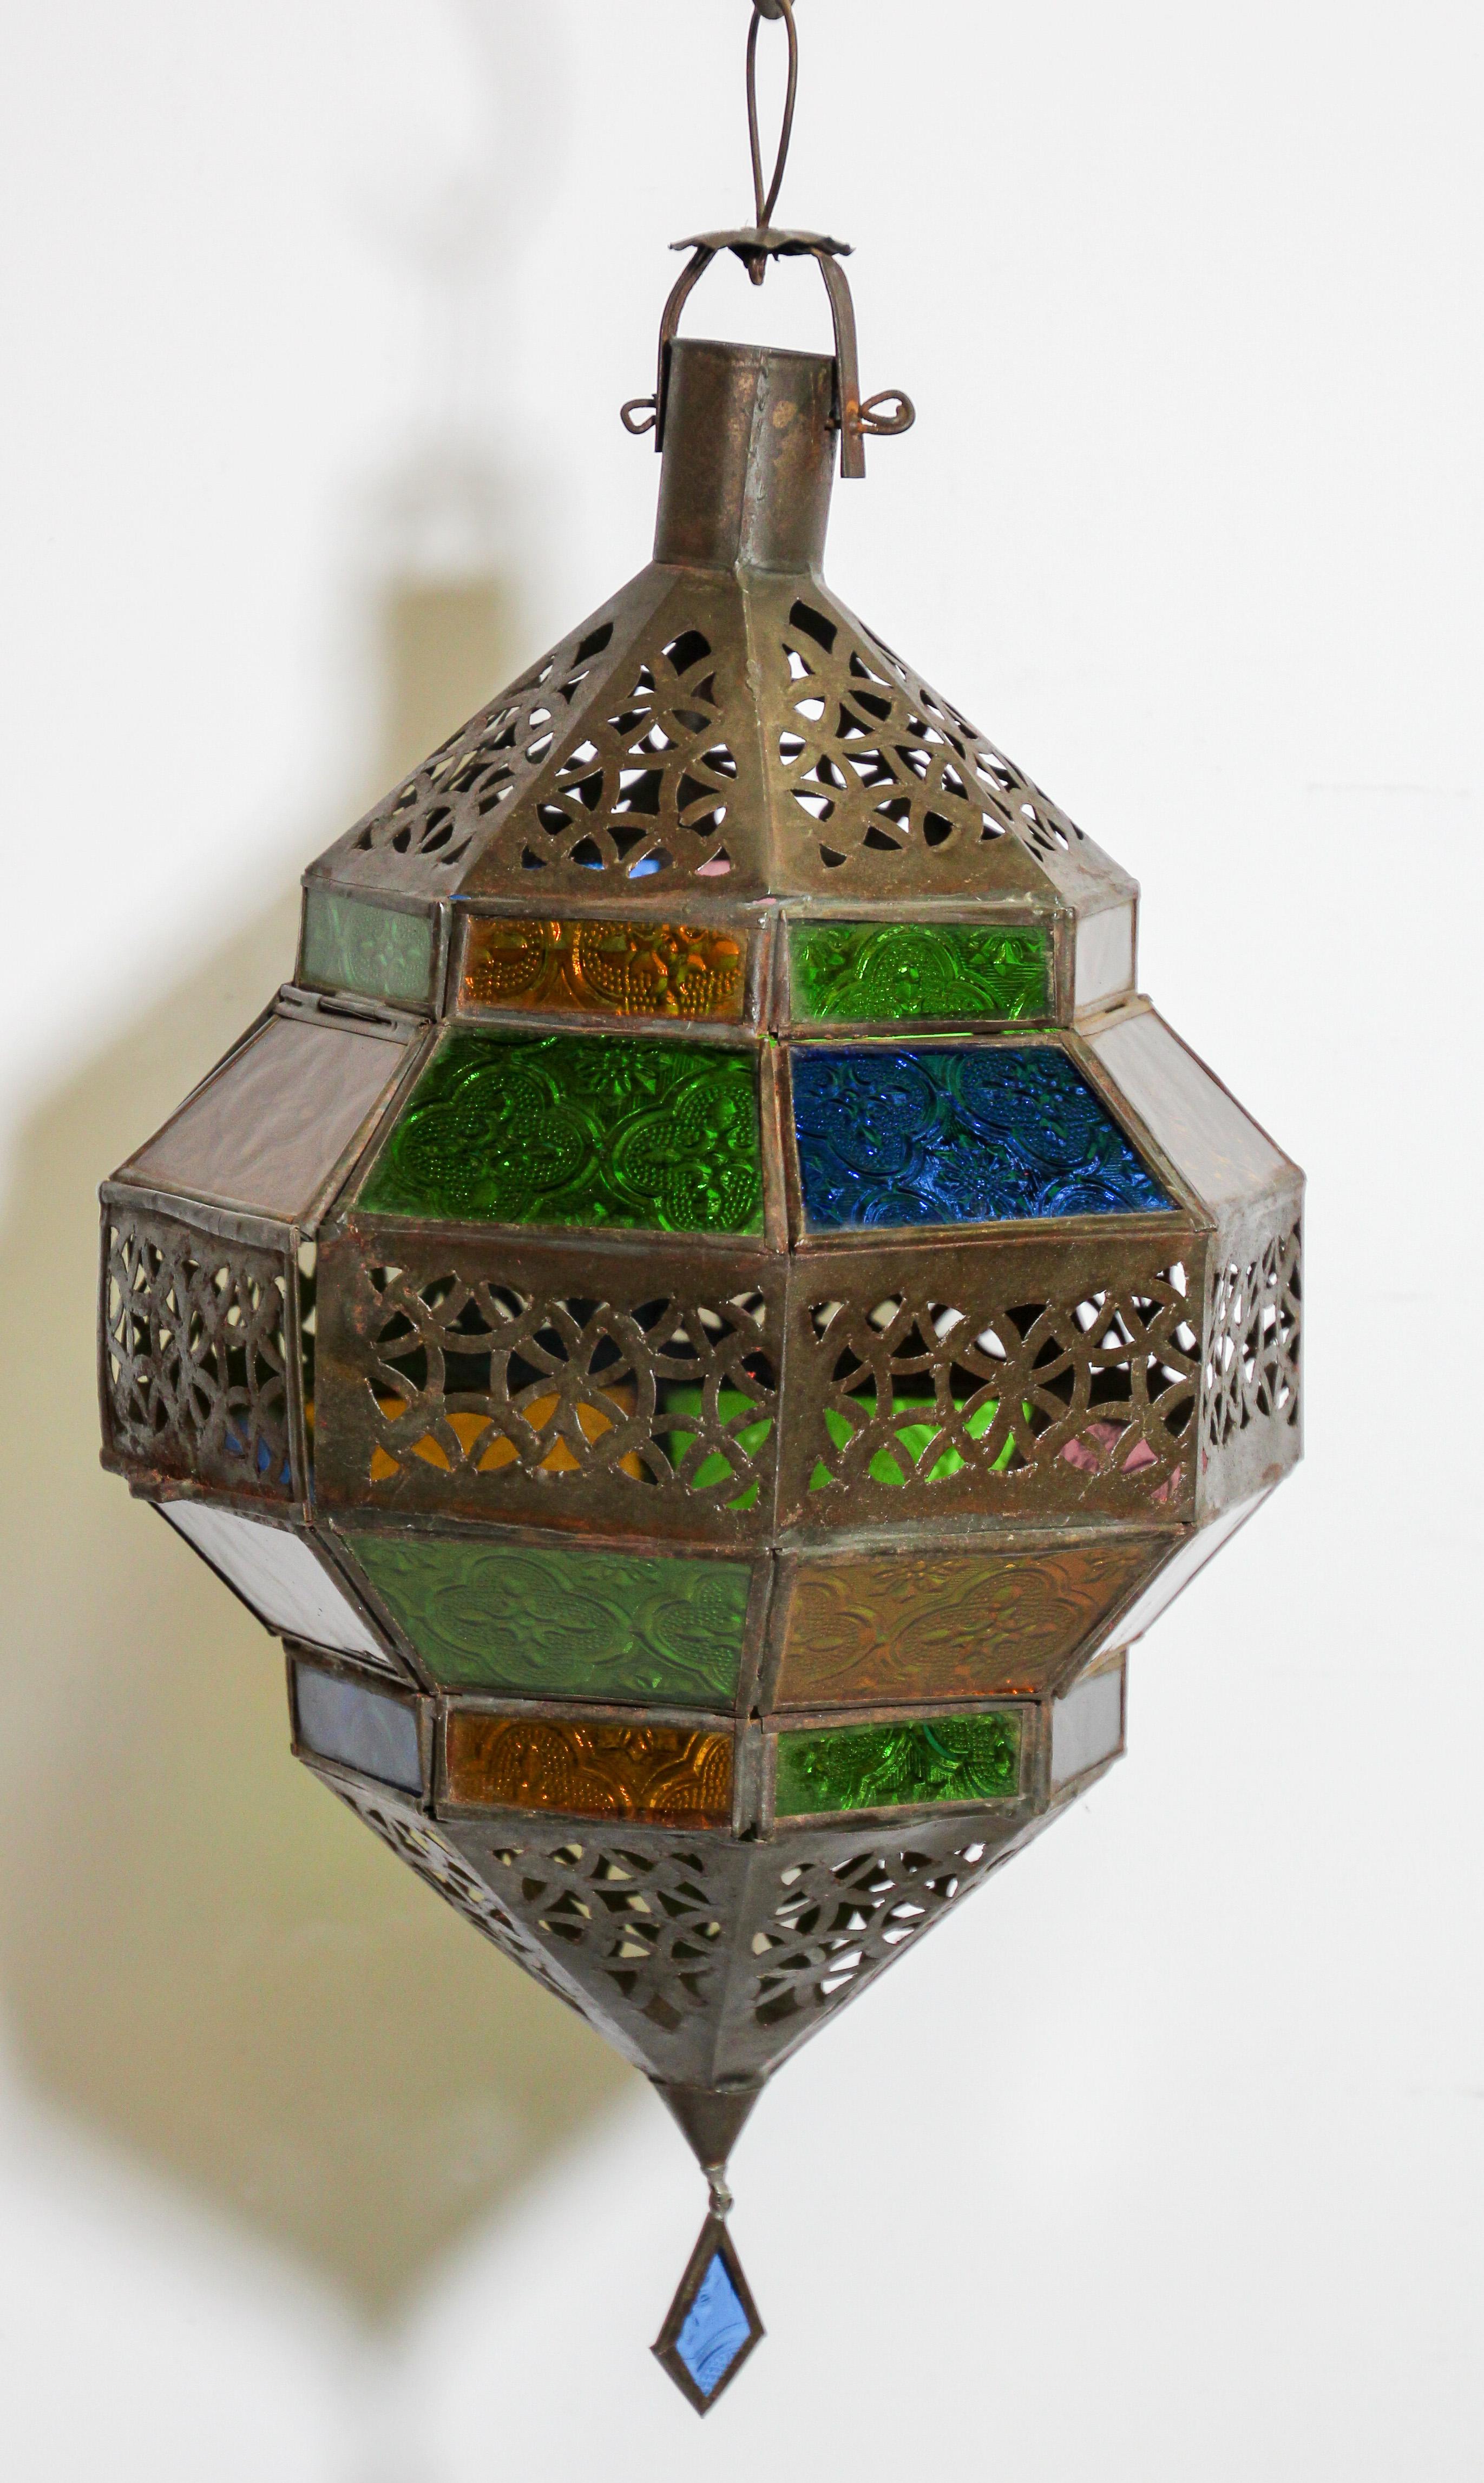 Marokkanische Laterne aus Metall und mehrfarbigem Glas, bernsteinfarbenes, grünes, lavendelfarbenes und blaues Glas in Rautenform.
Marokkanische Laterne in achteckiger Form mit rostfarbener Metalloberfläche und blauem Glas.
Die Ober- und Unterseite